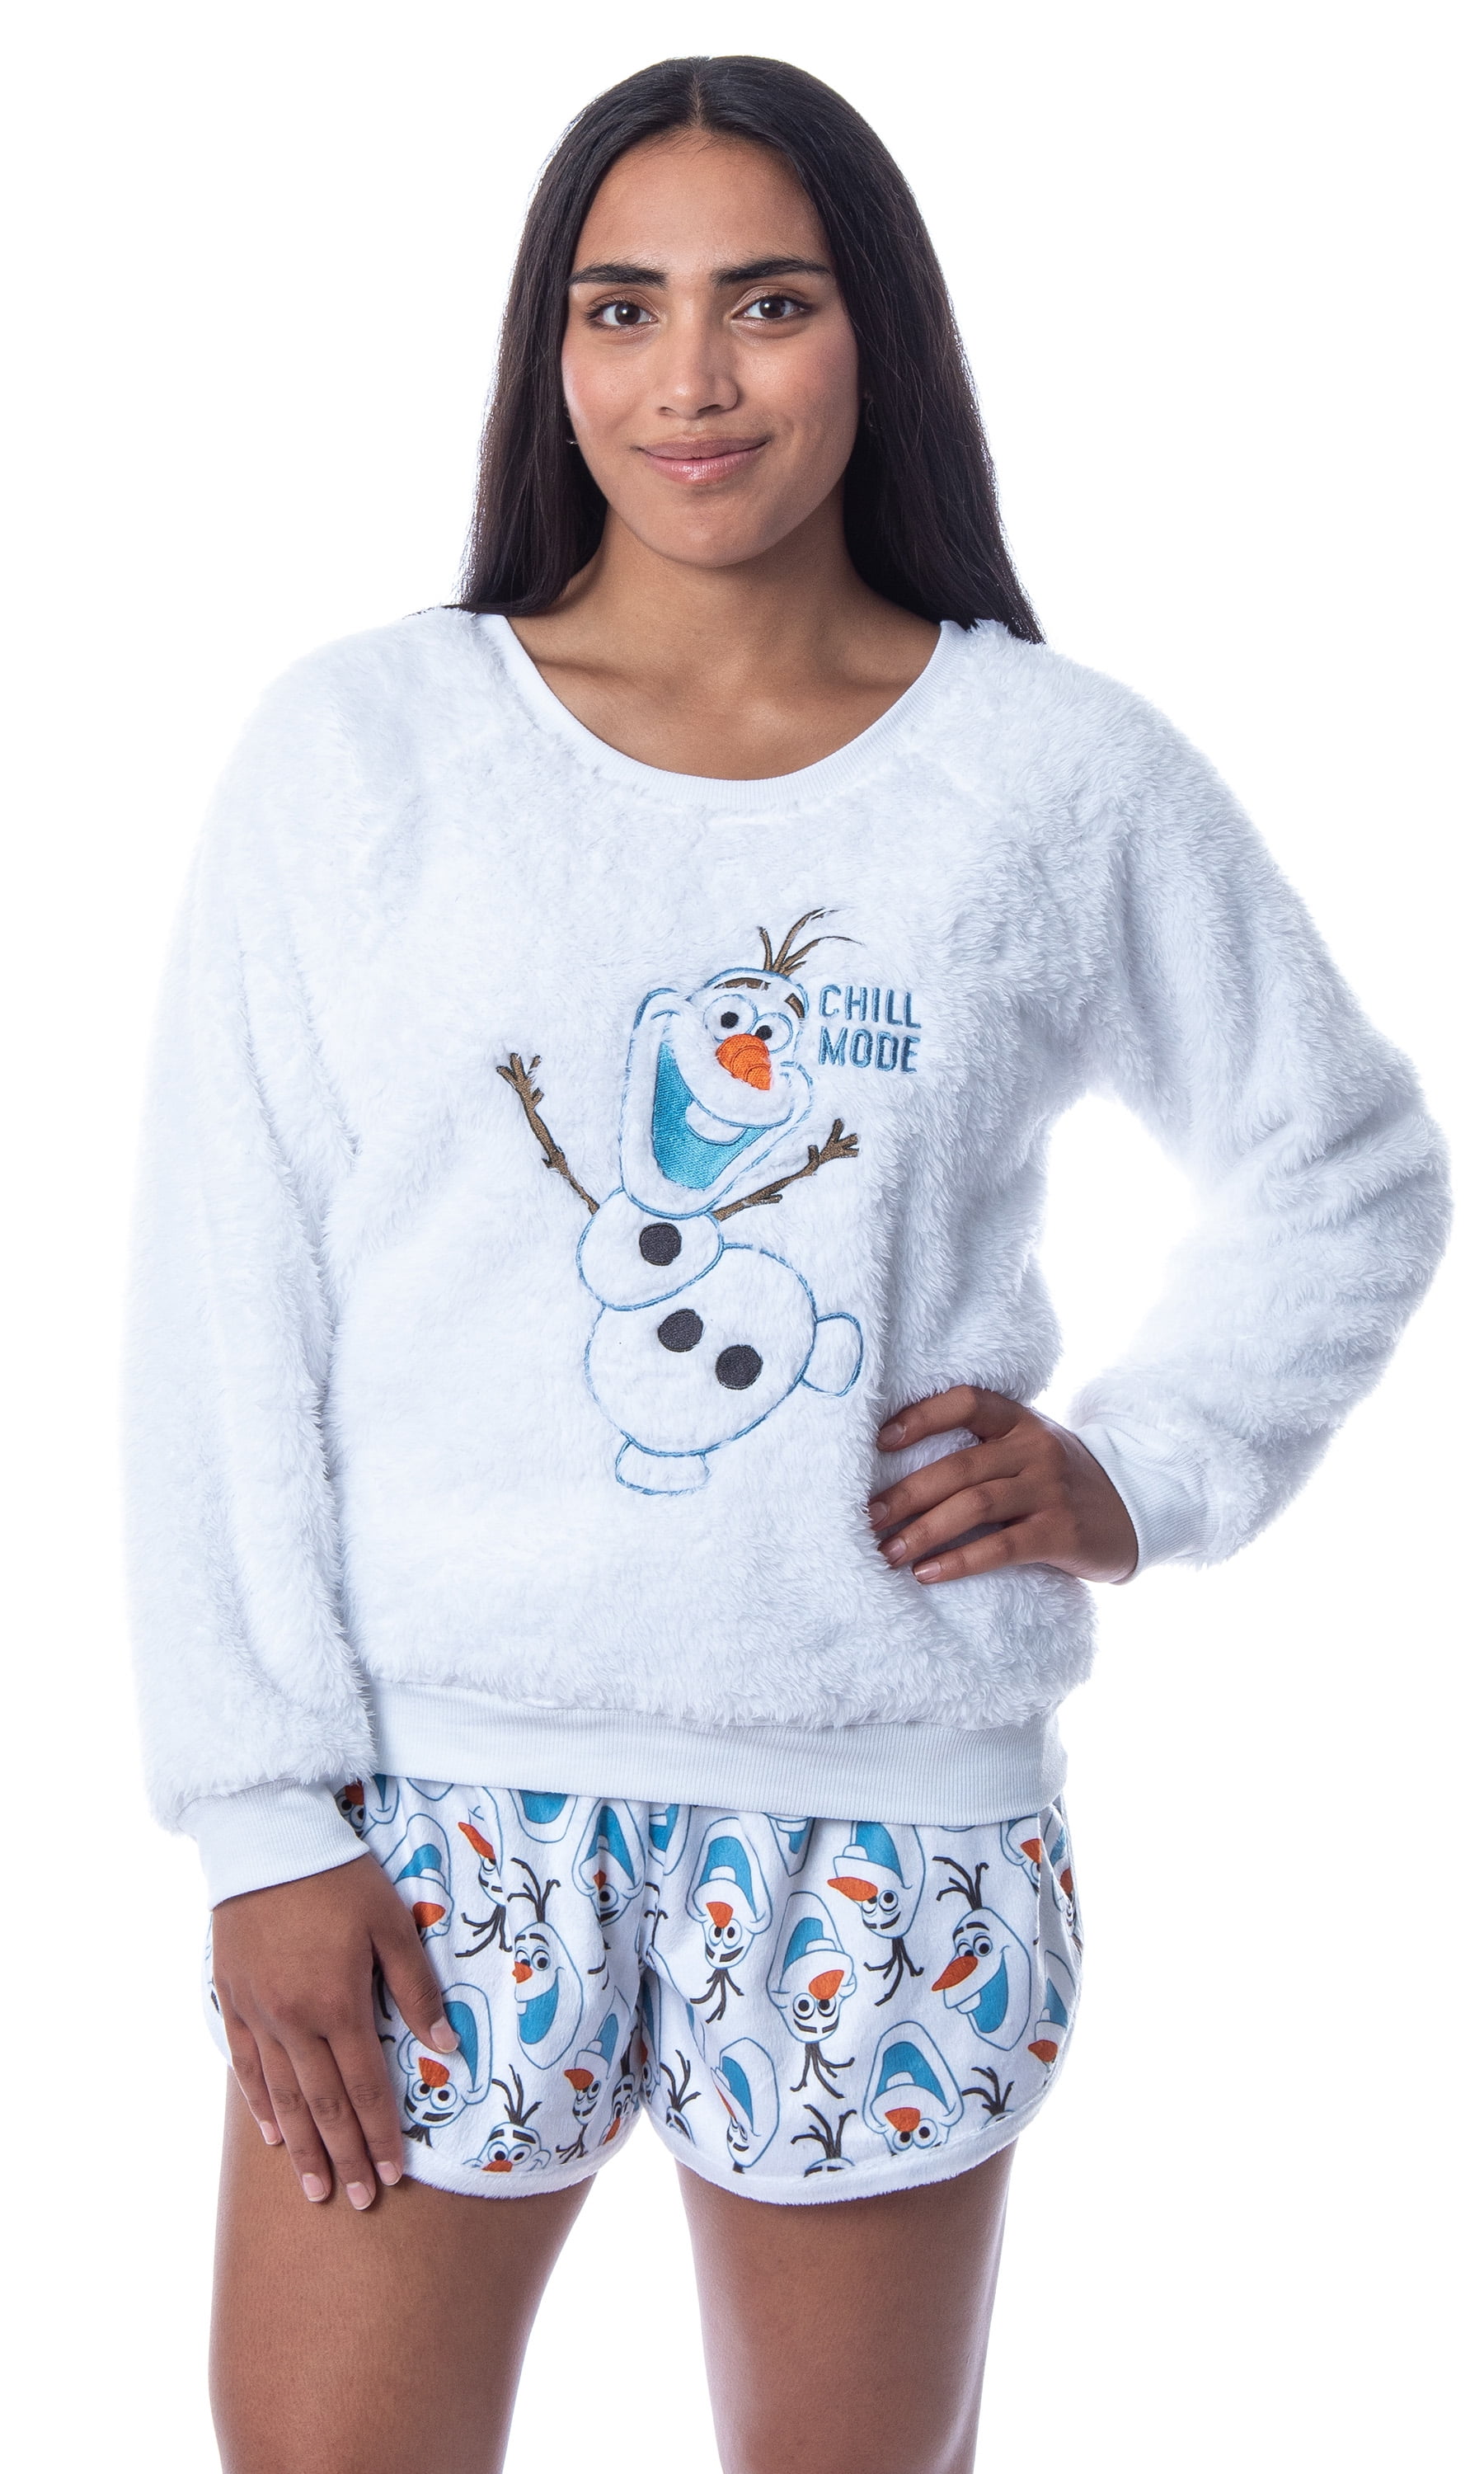 pijama mujer polar, Noidinotte aw21